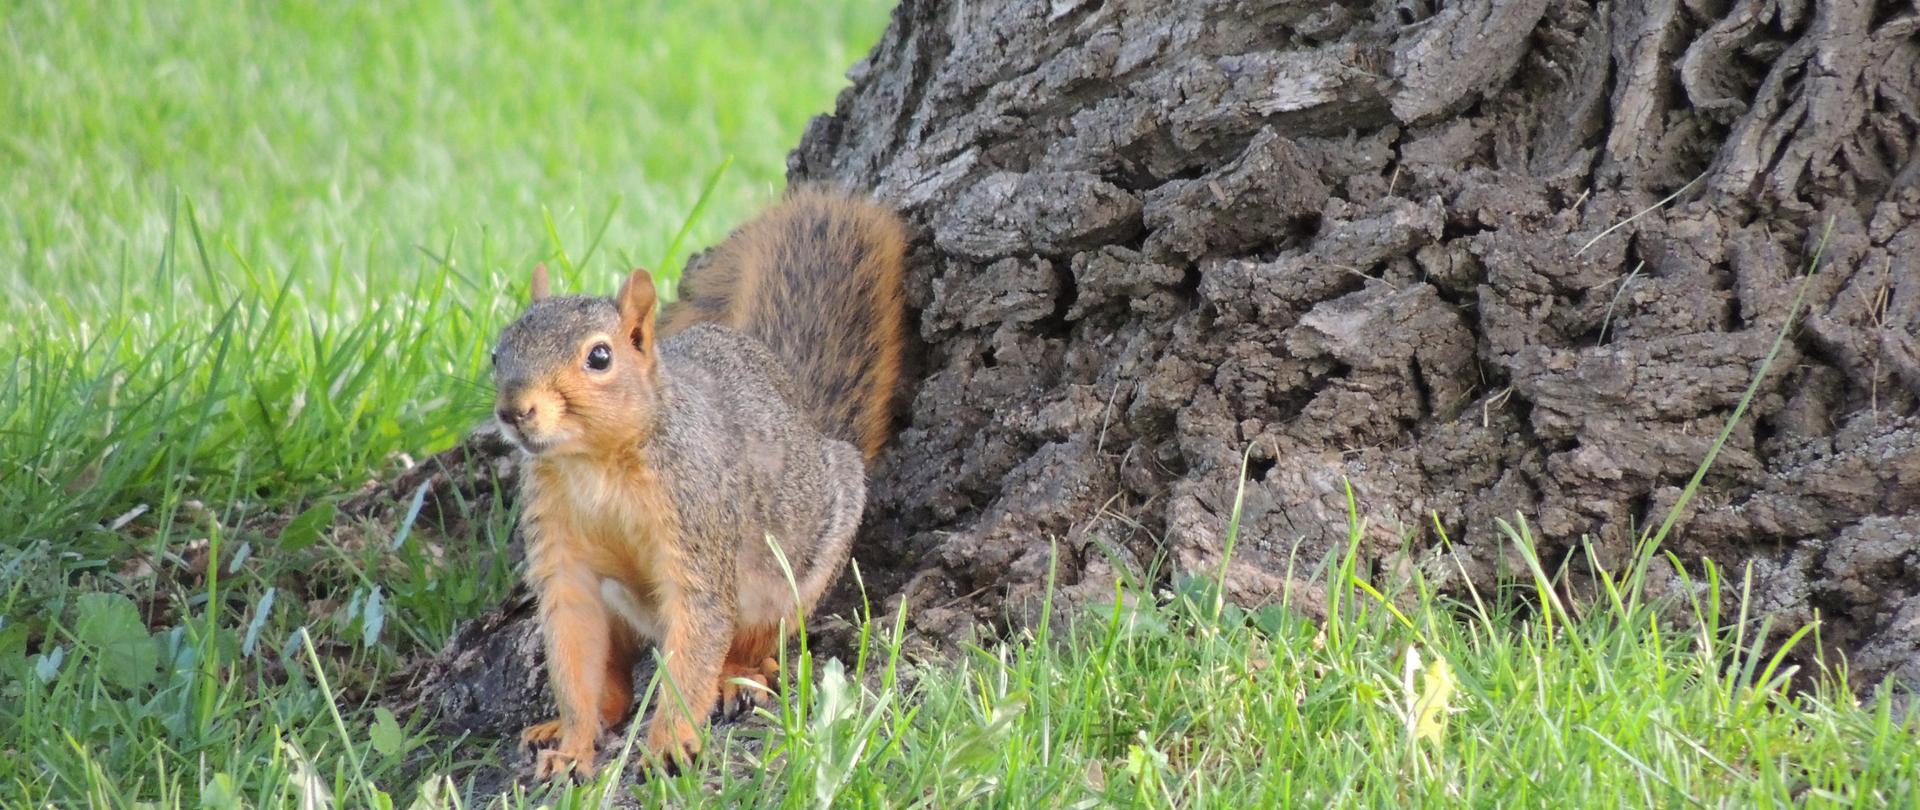 Na zdjęciu schodząca z drzewa wiewiórka czarna sierść w dwóch kolorach rudym i czarnym.